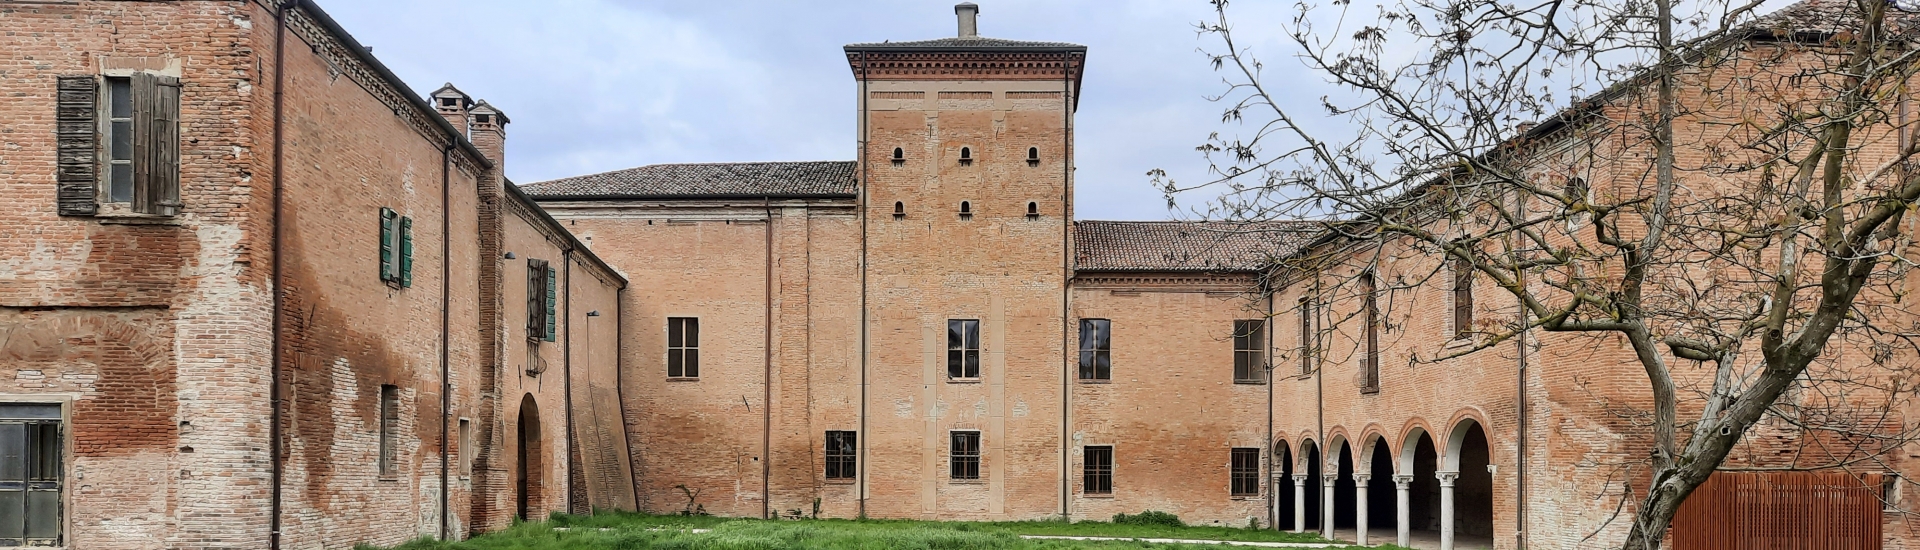 Villa Mensa - Prospettiva foto di: |Comune di Copparo| - Elena Grinetti